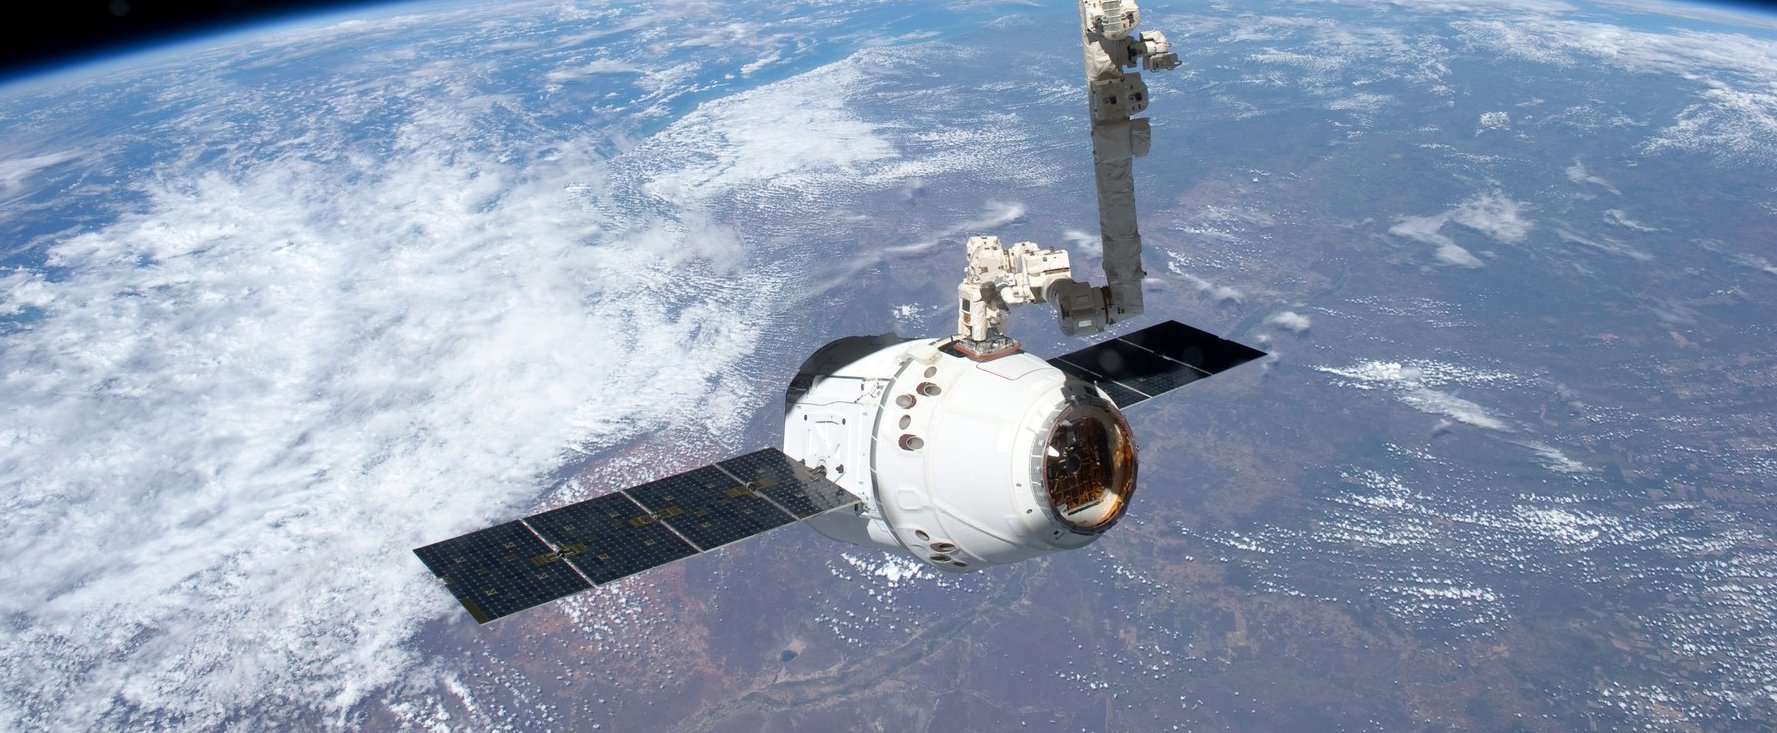 Felfoghatatlan csoda: a NASA meglépte a lehetetlent, ezzel az egész világ sorsát megváltoztatták egyetlen nap alatt